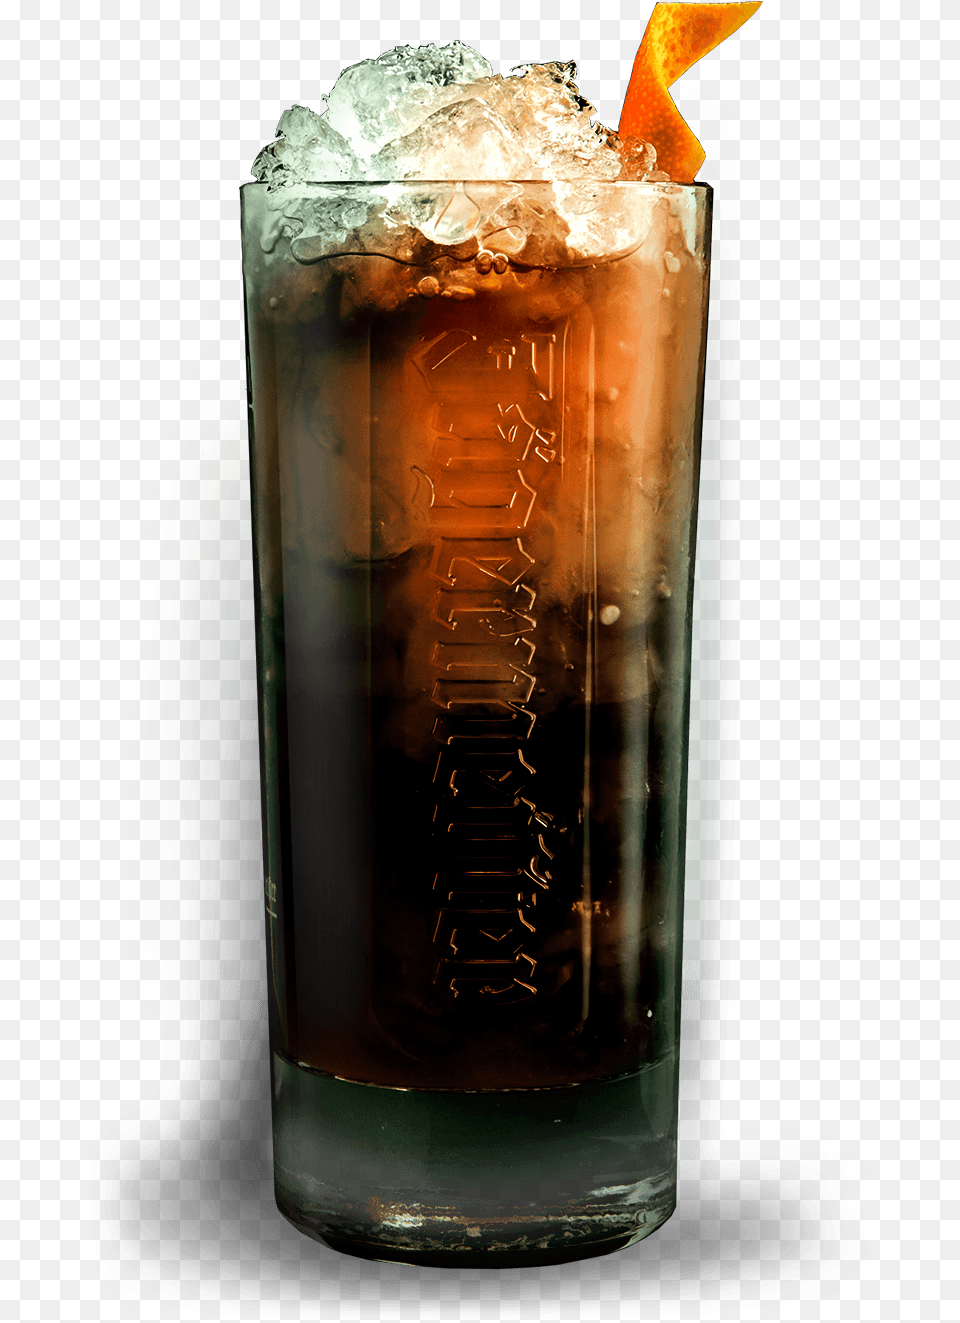 Jgermeister Fresh Orange, Alcohol, Beer, Beverage, Glass Png Image